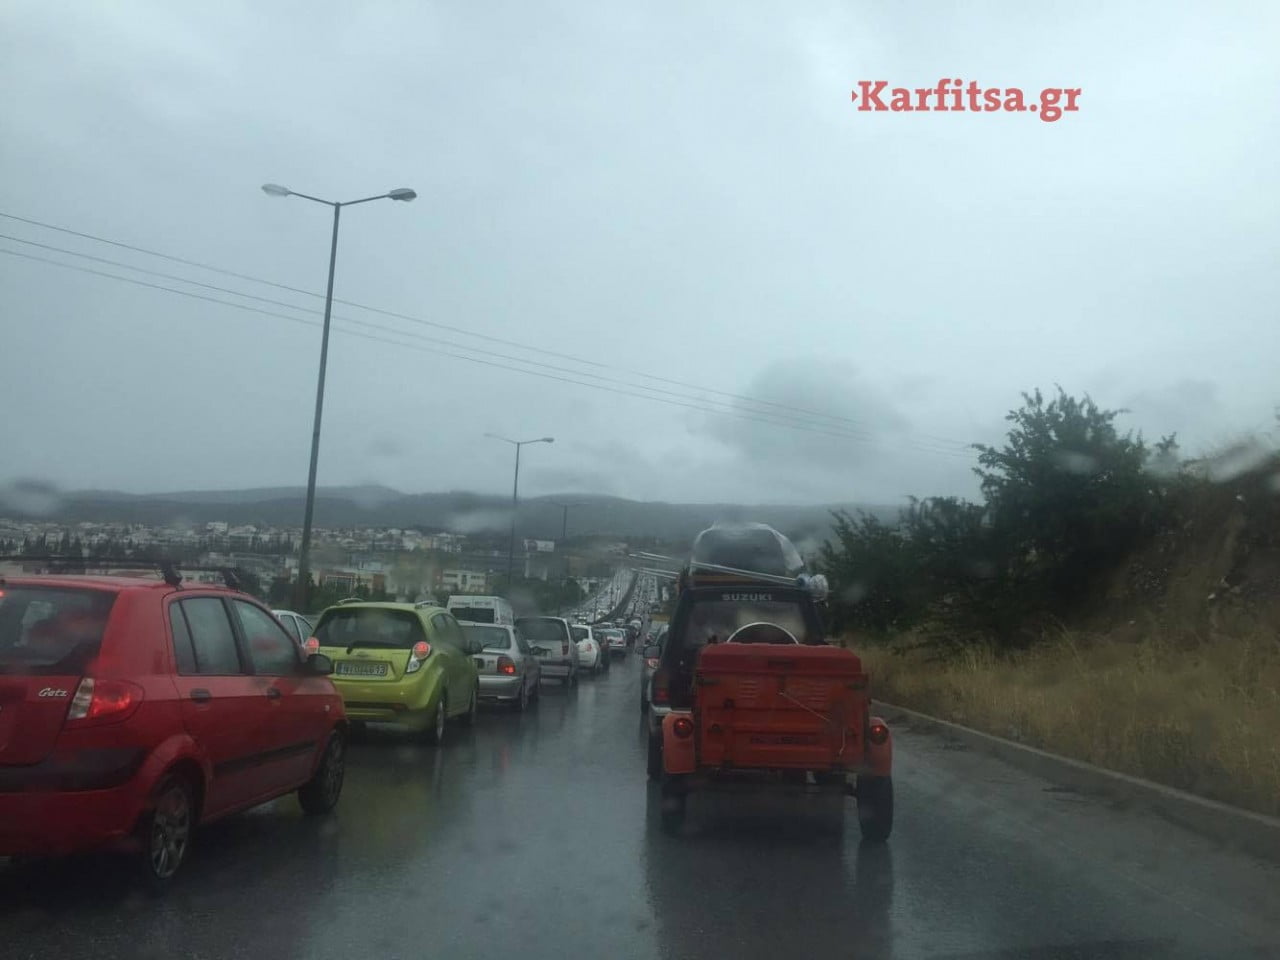 Πριν από λίγο: Τροχαίο ατύχημα στον περιφερειακό Θεσσαλονίκης- Αυξημένη κίνηση!